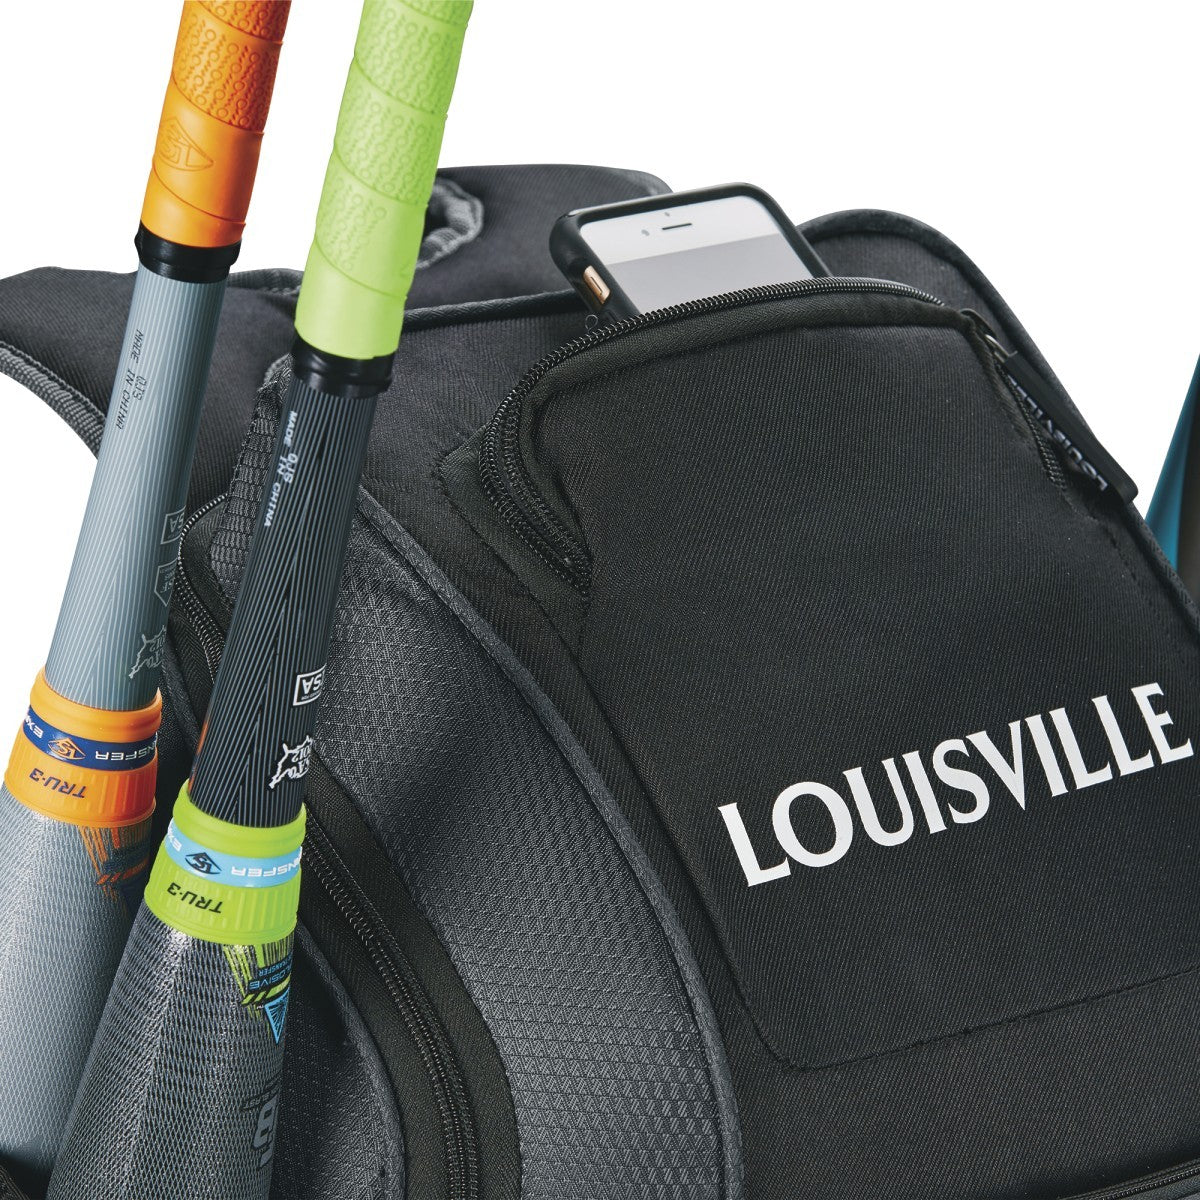 Louisville Slugger Prime Rig Wheeled Bag - Black